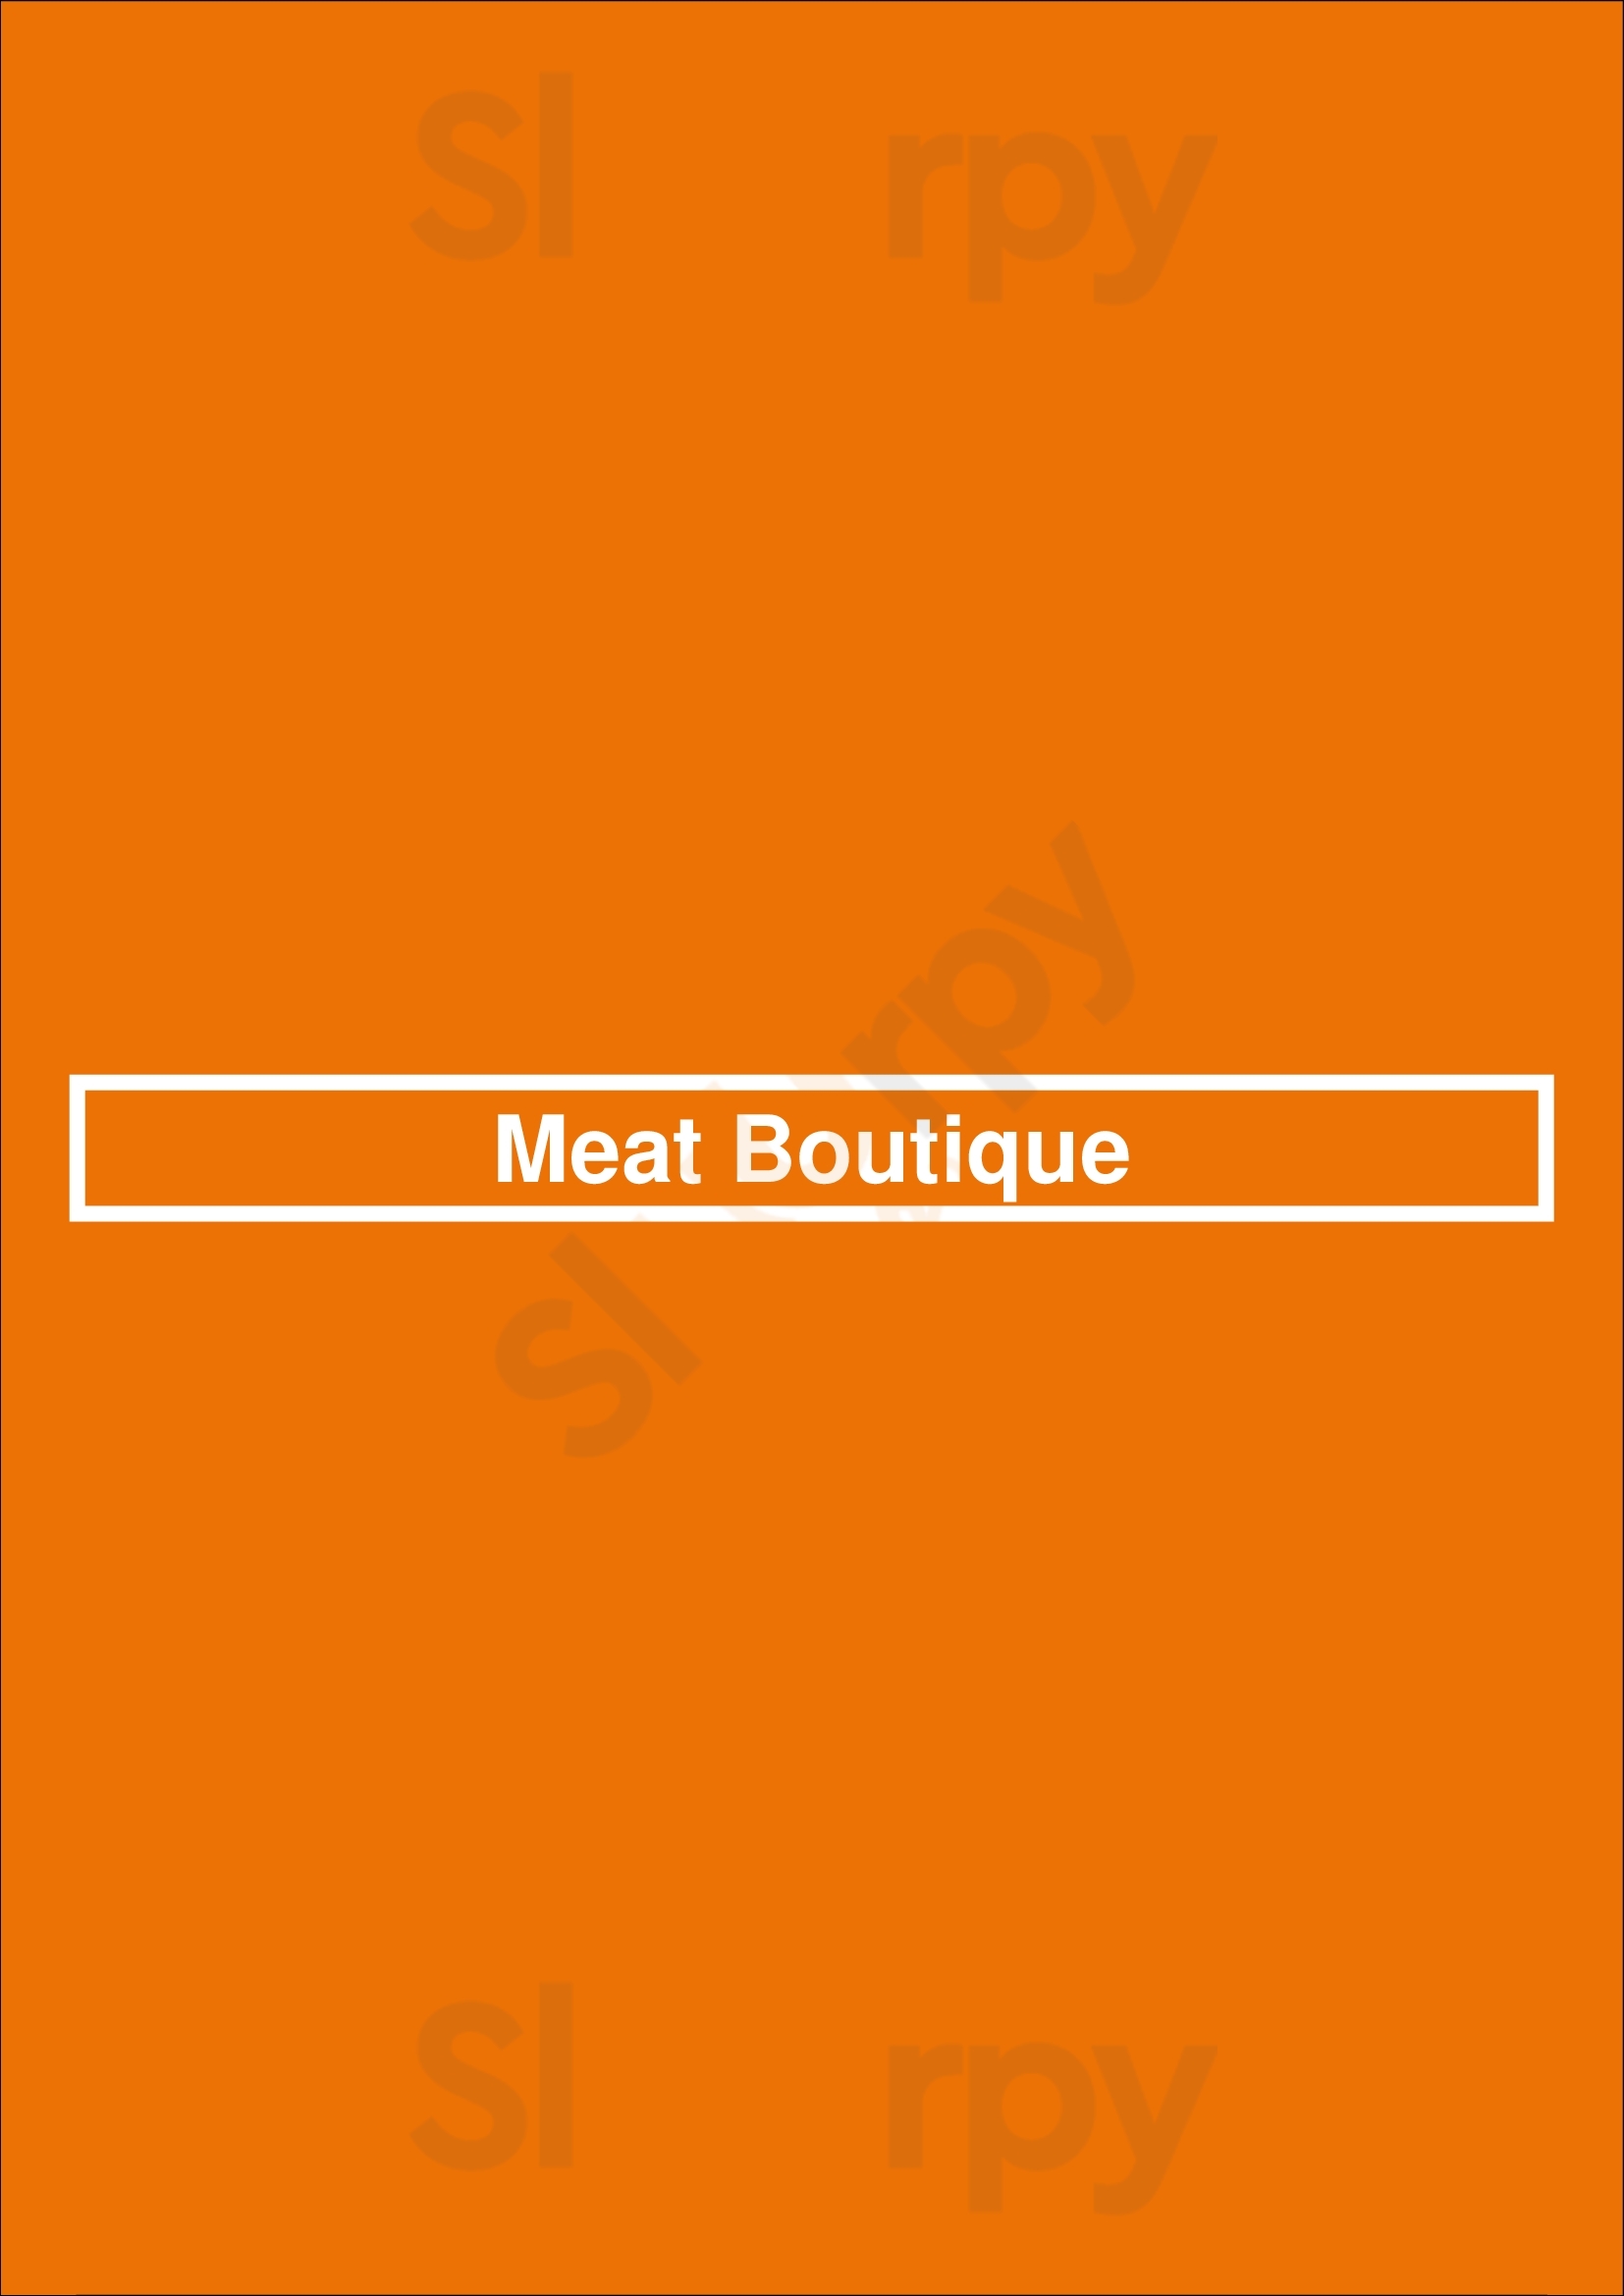 Meat Boutique Budapest Menu - 1